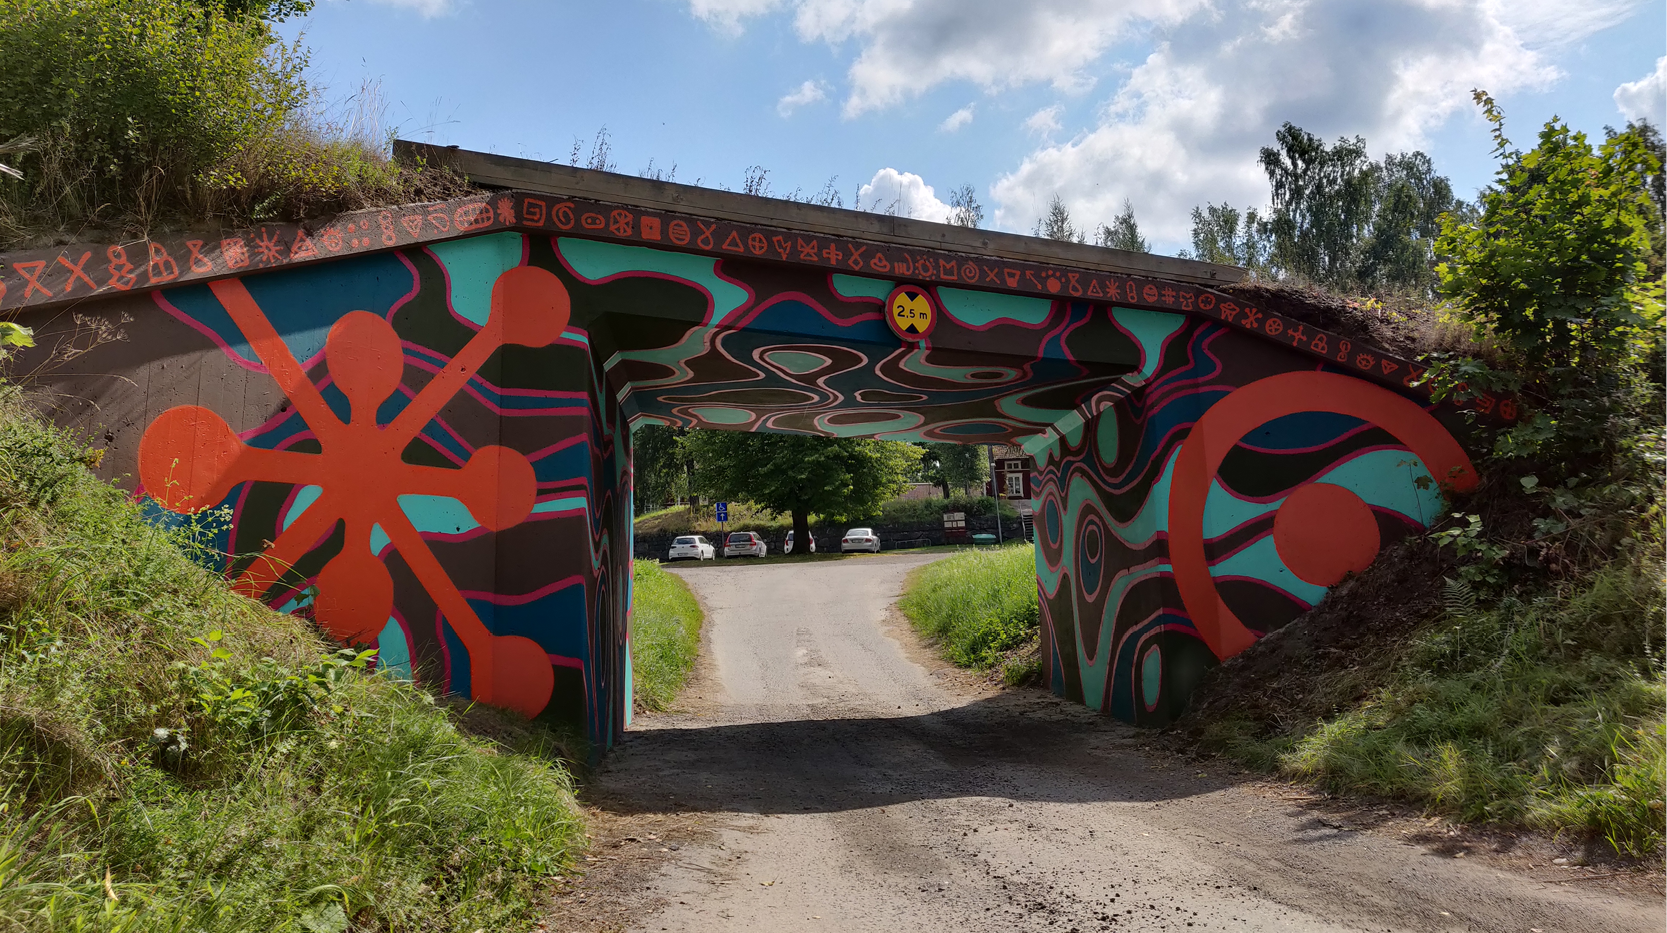 Färgglatt målad gångtunnel. På sidorna två stora symboler. Takkanten är fylld av mindre symboler.